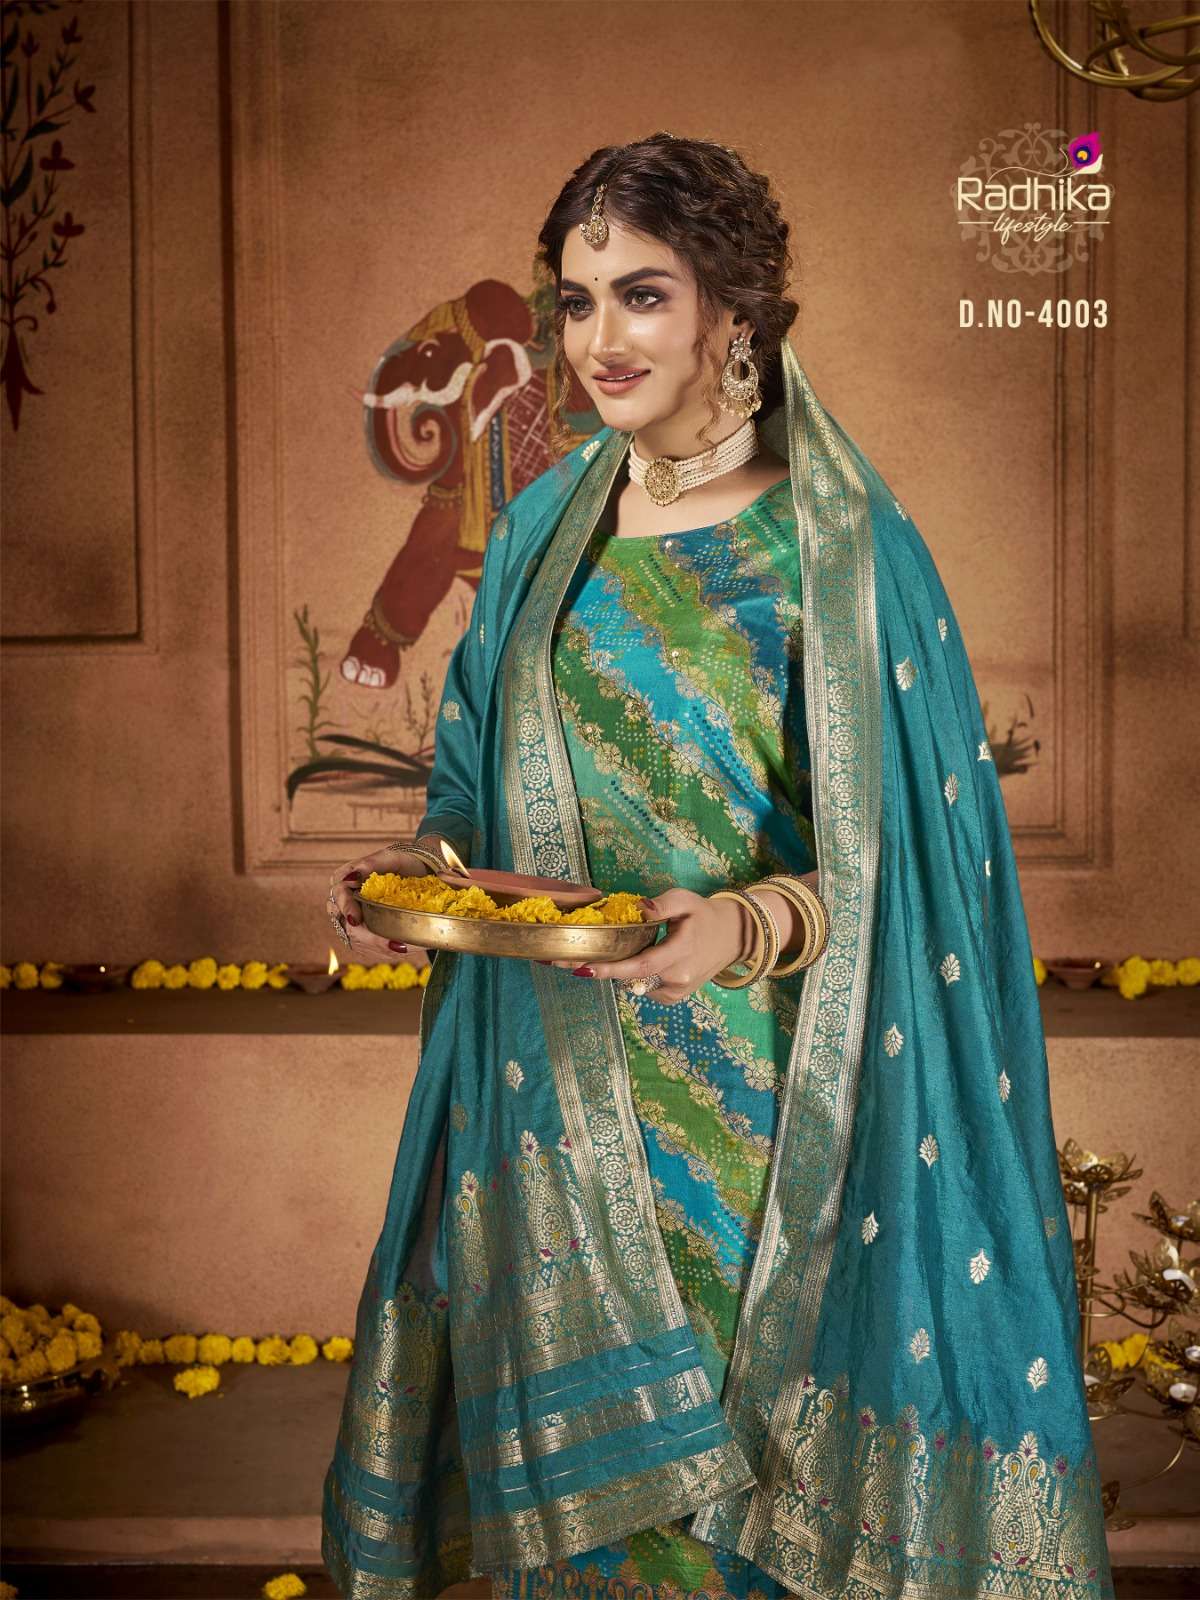 radhika lifestyle banarasi vol-4 4001-4004 series latest pakistani salwar kameez wholesaler surat gujarat